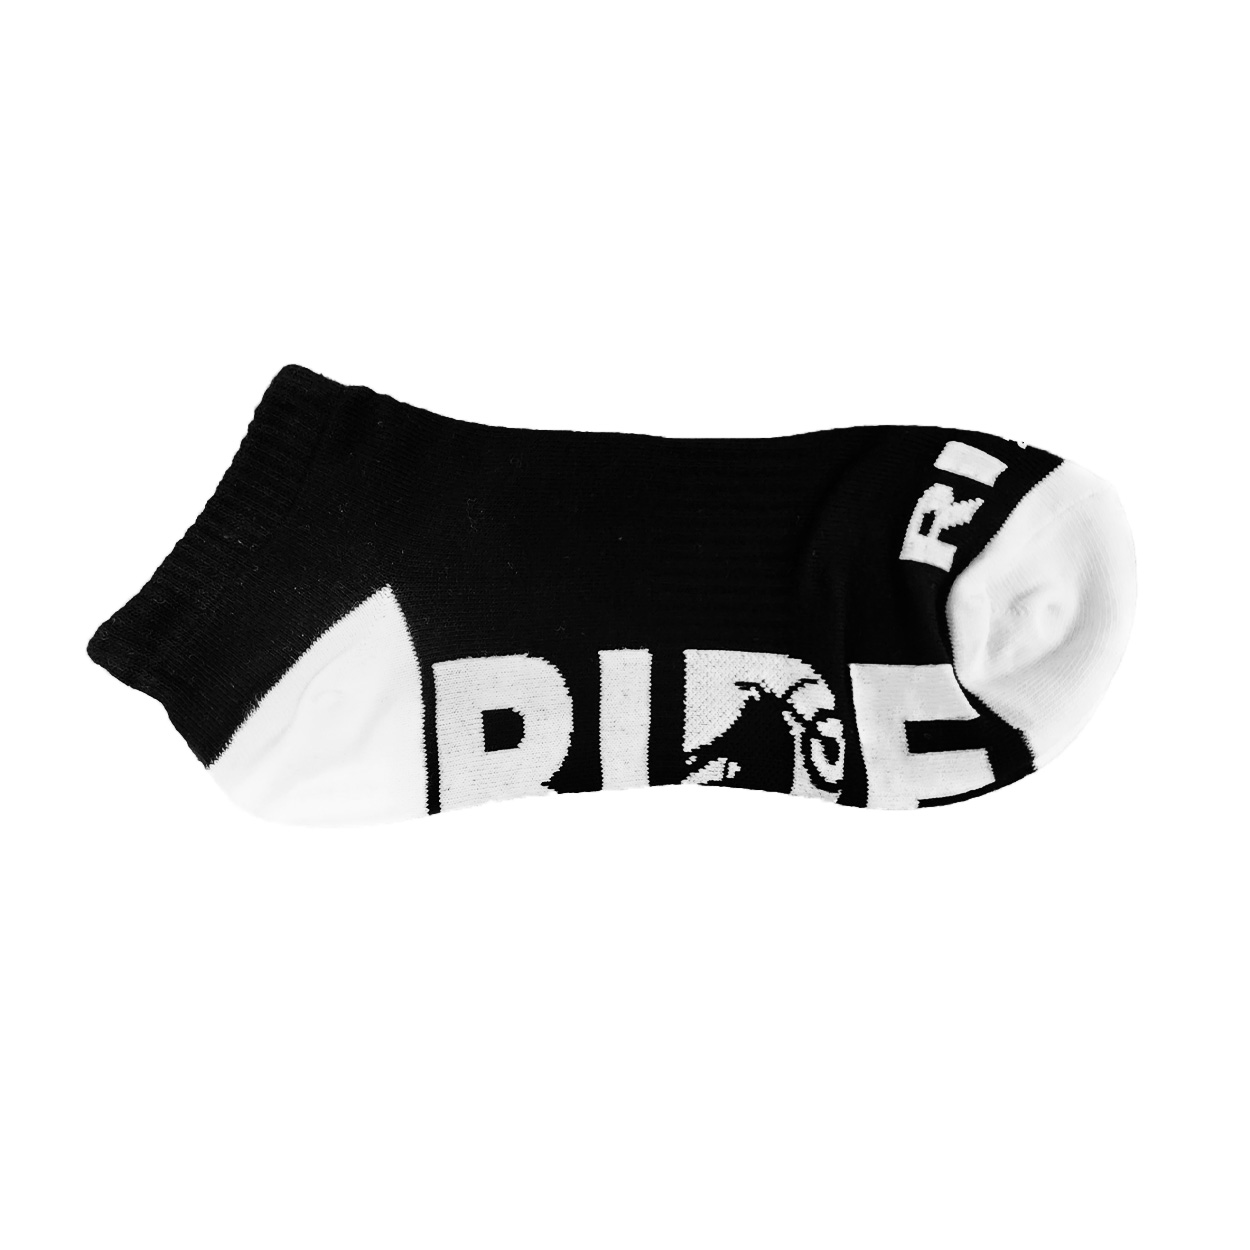 Ride Moto Logo Classic Ankle High Socks Black/White